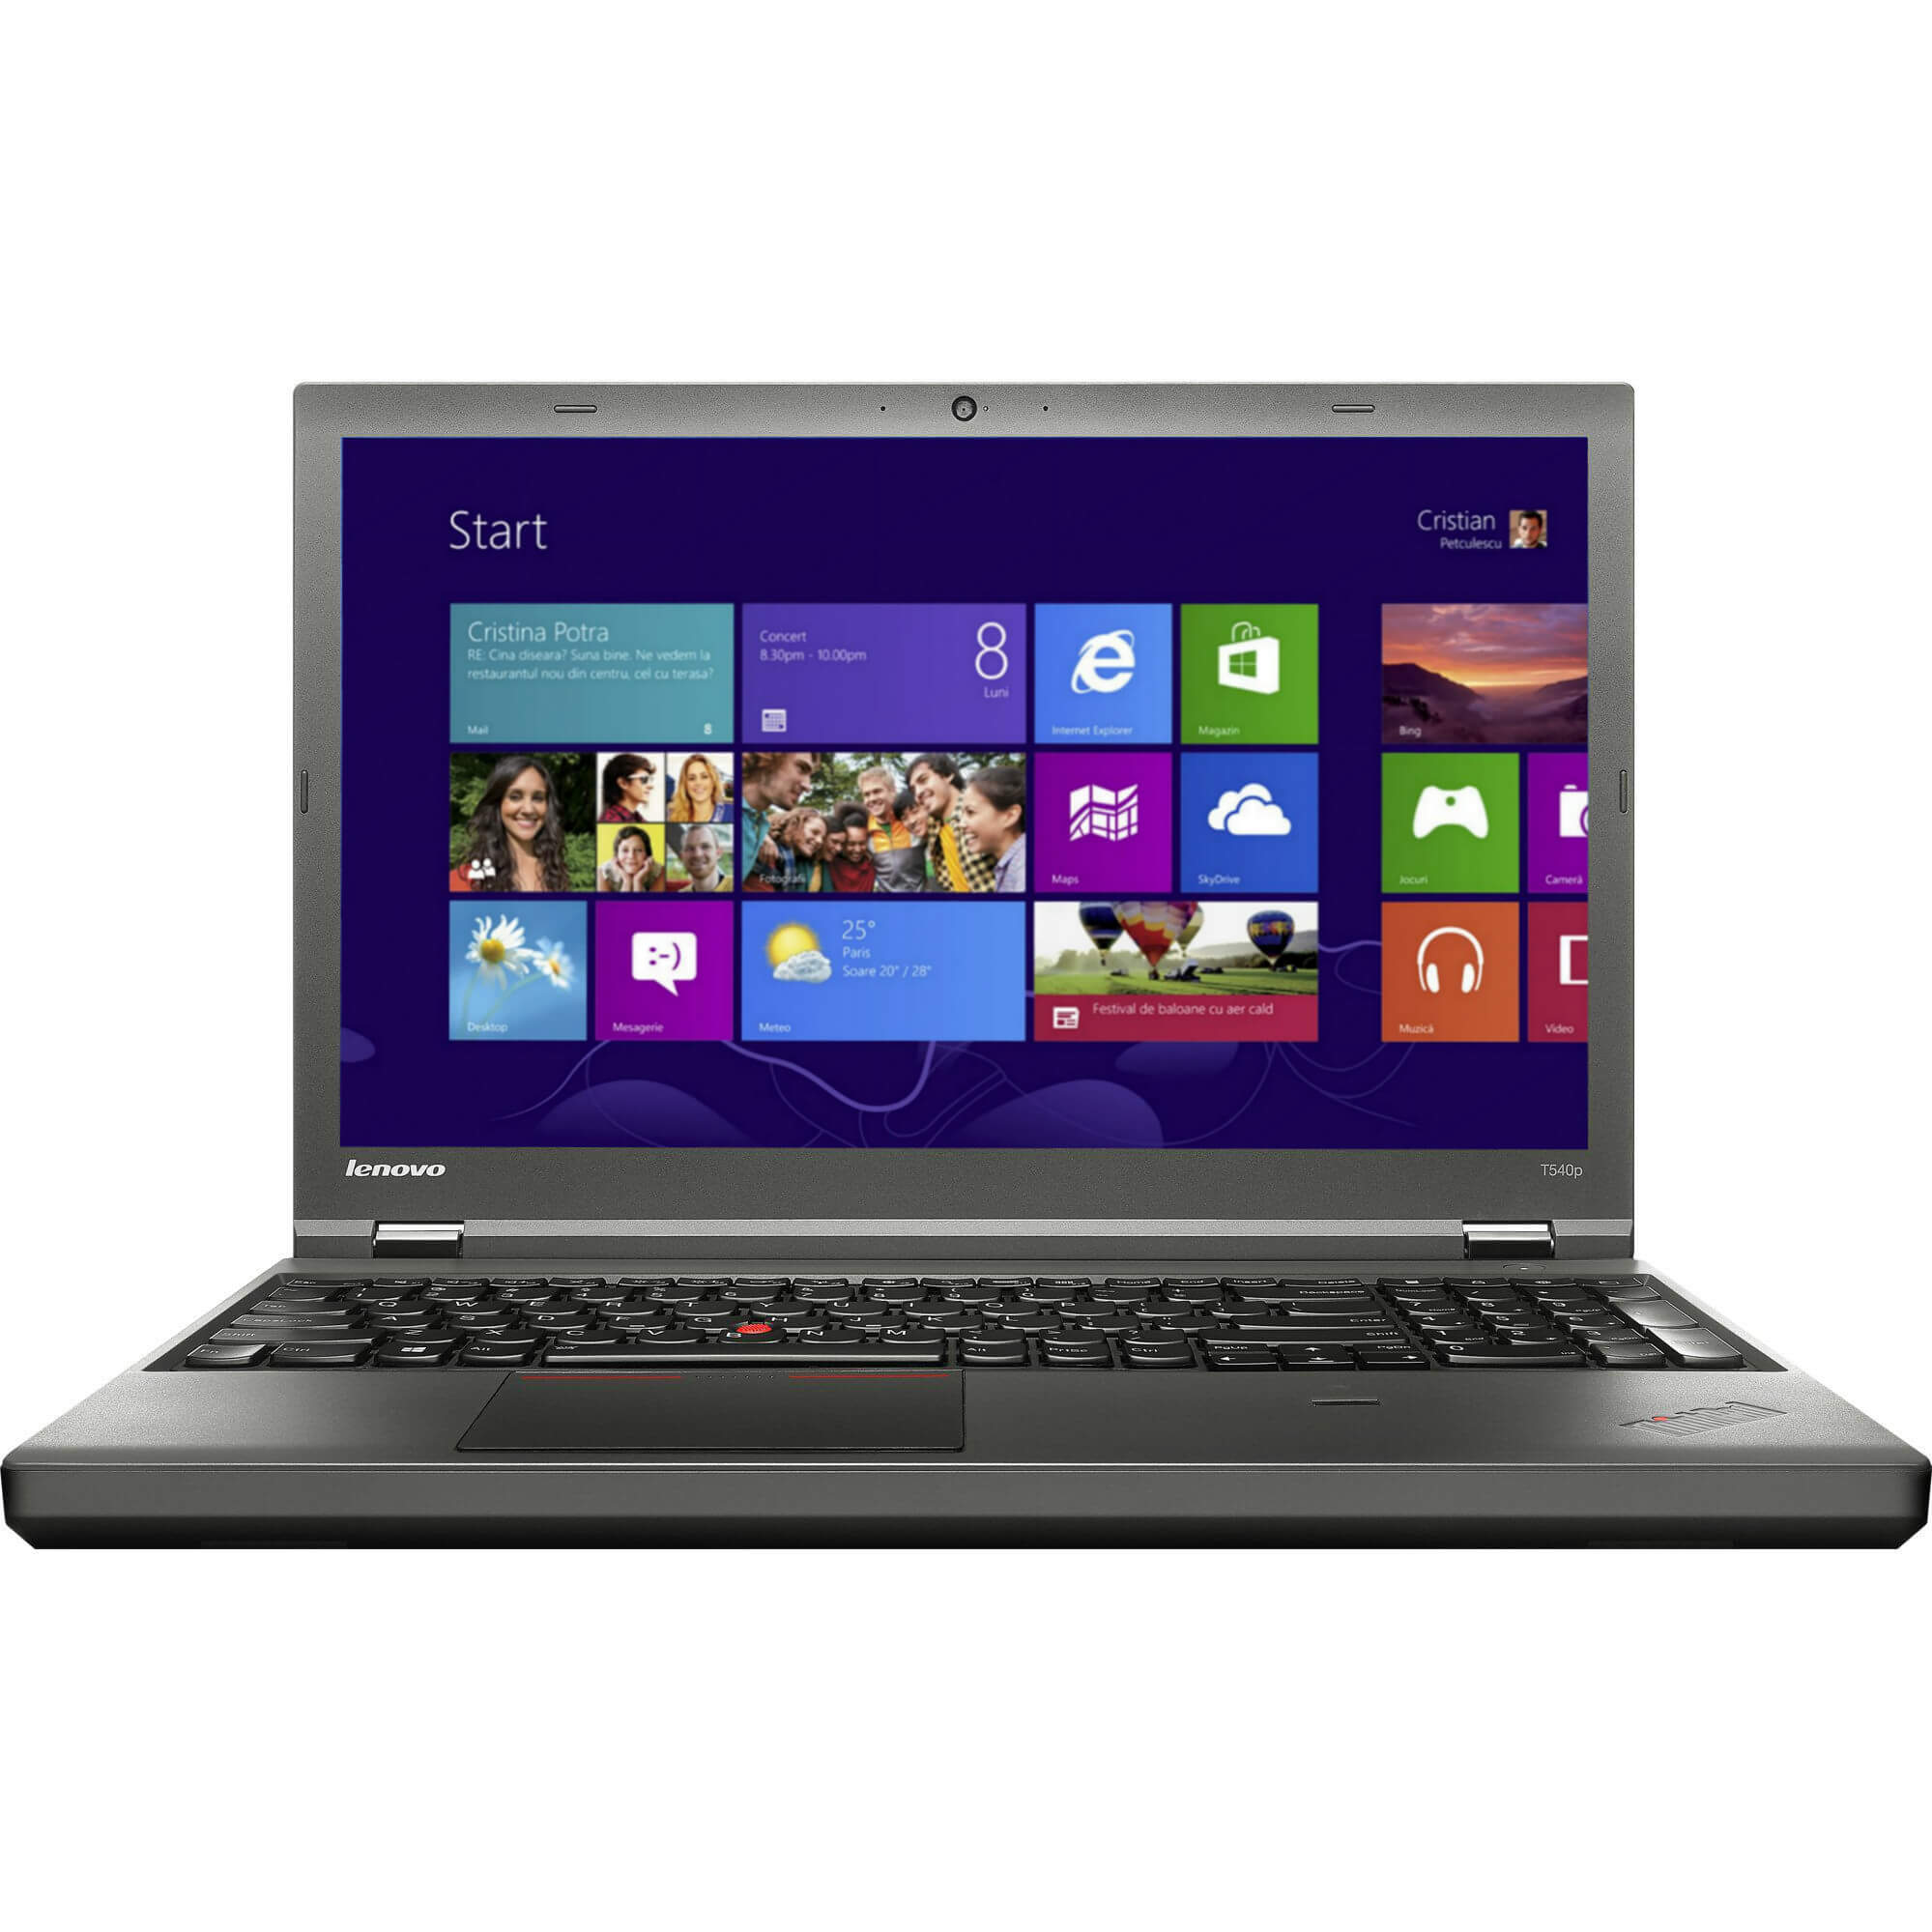  Laptop Lenovo ThinkPad T540p, Intel Core i7-4710MQ, 8GB DDR3, SSD 256GB, nVidia GeForce GT 730M 1GB, Windows 8 Pro 